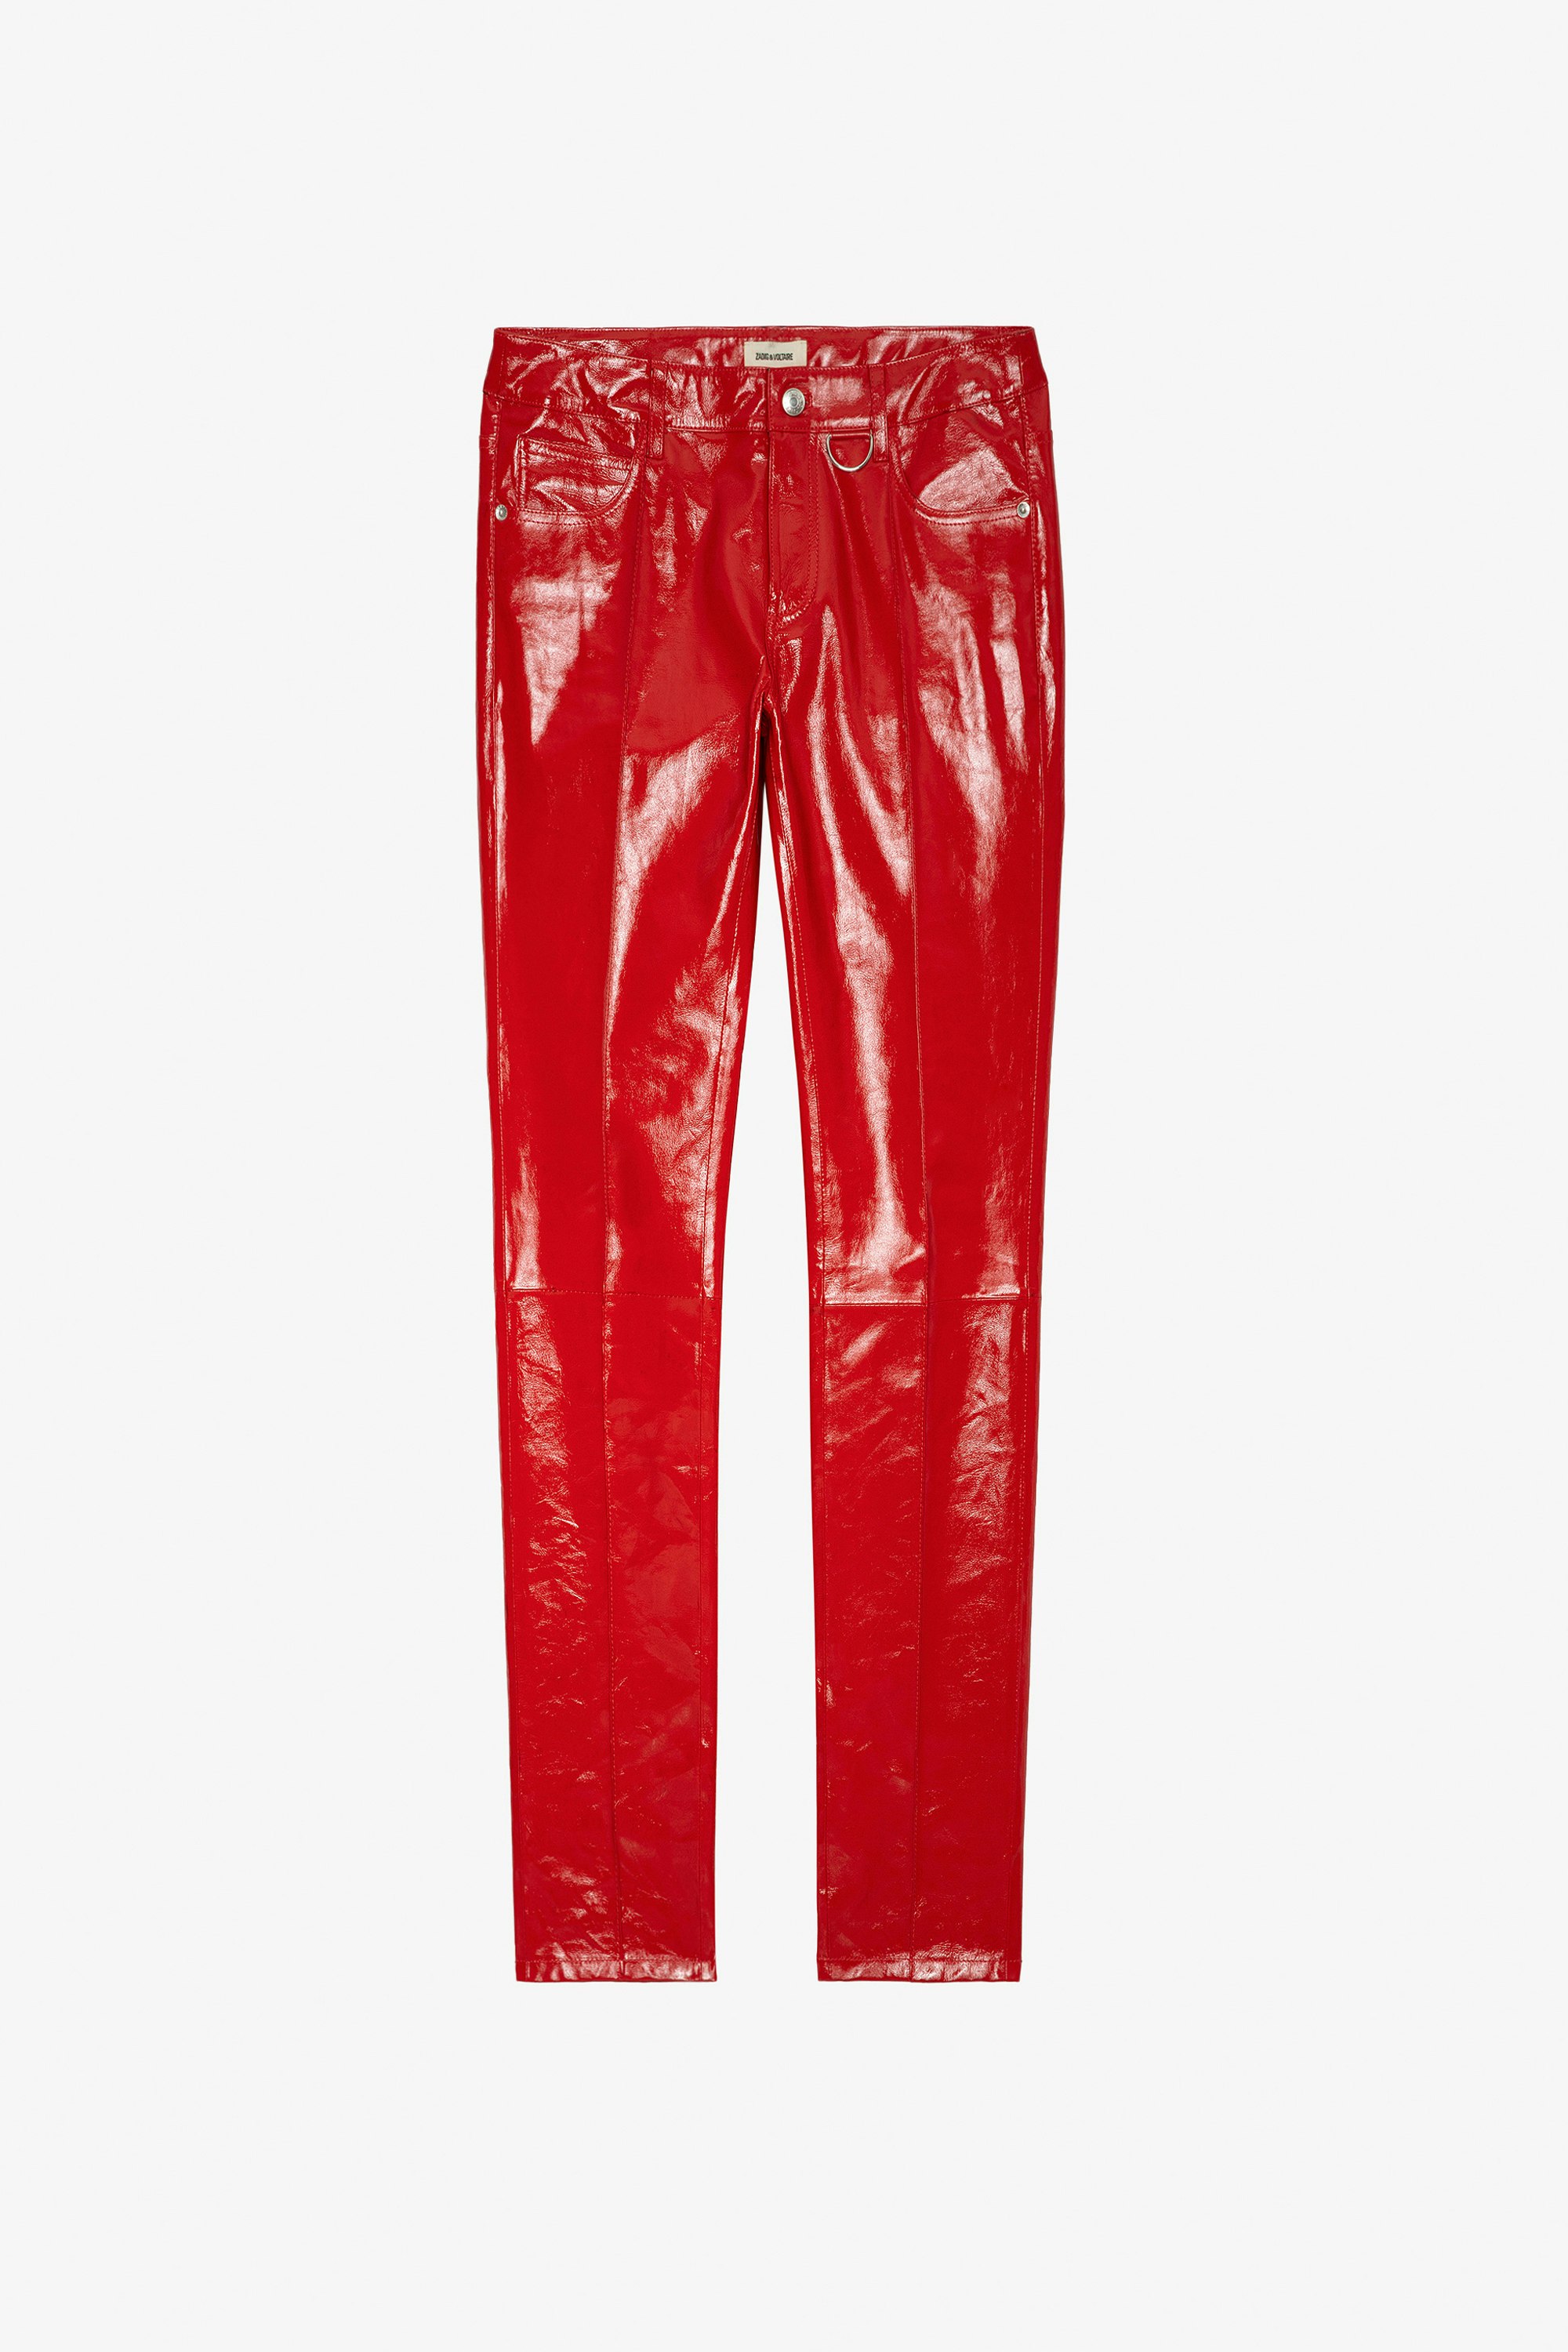 Hose Peko Vinyl - Hose aus rotem Vinylleder für Damen.